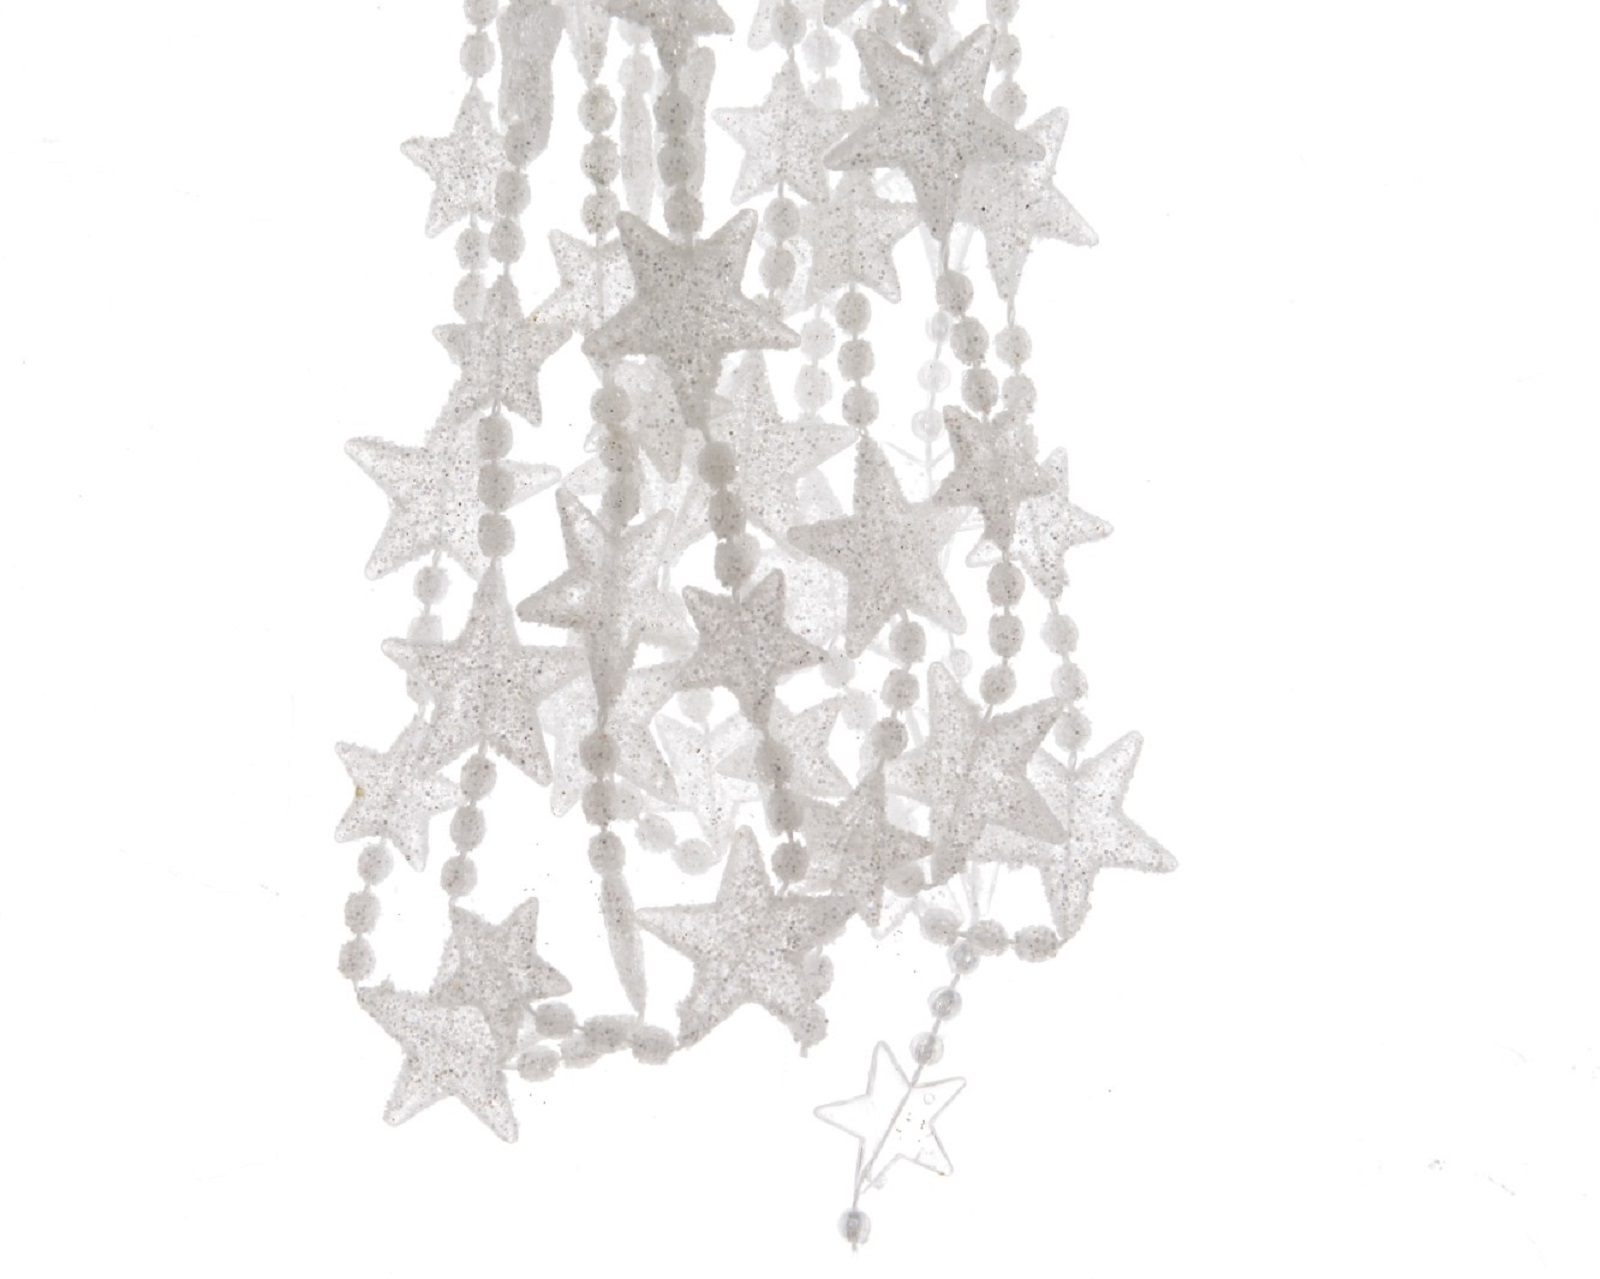 Perlenkette mit Sterne Kette Baumschmuck Perlengirlande Weihnachtsdeko 2,70 m